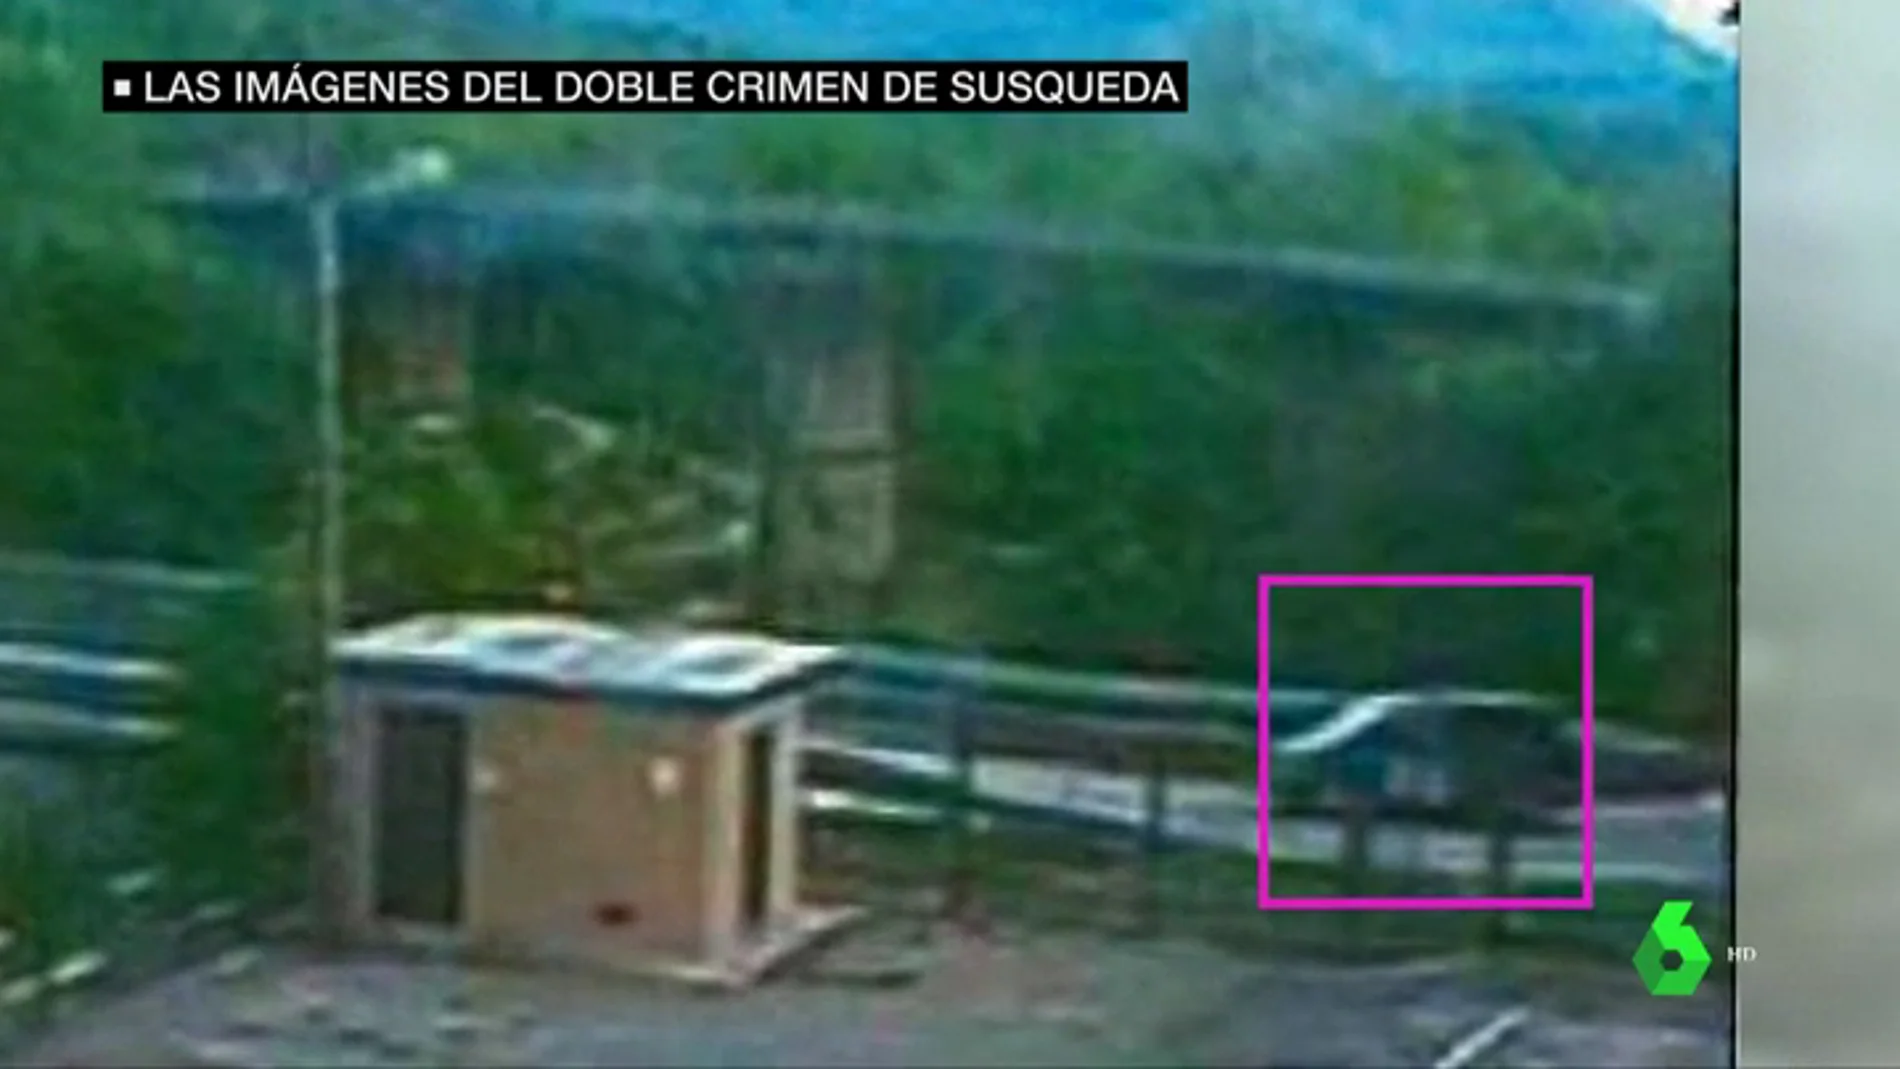 Las imágenes que sitúan a Jordi Magentí en el pantano de Susqueda donde fueron asesinados Marc y Paula